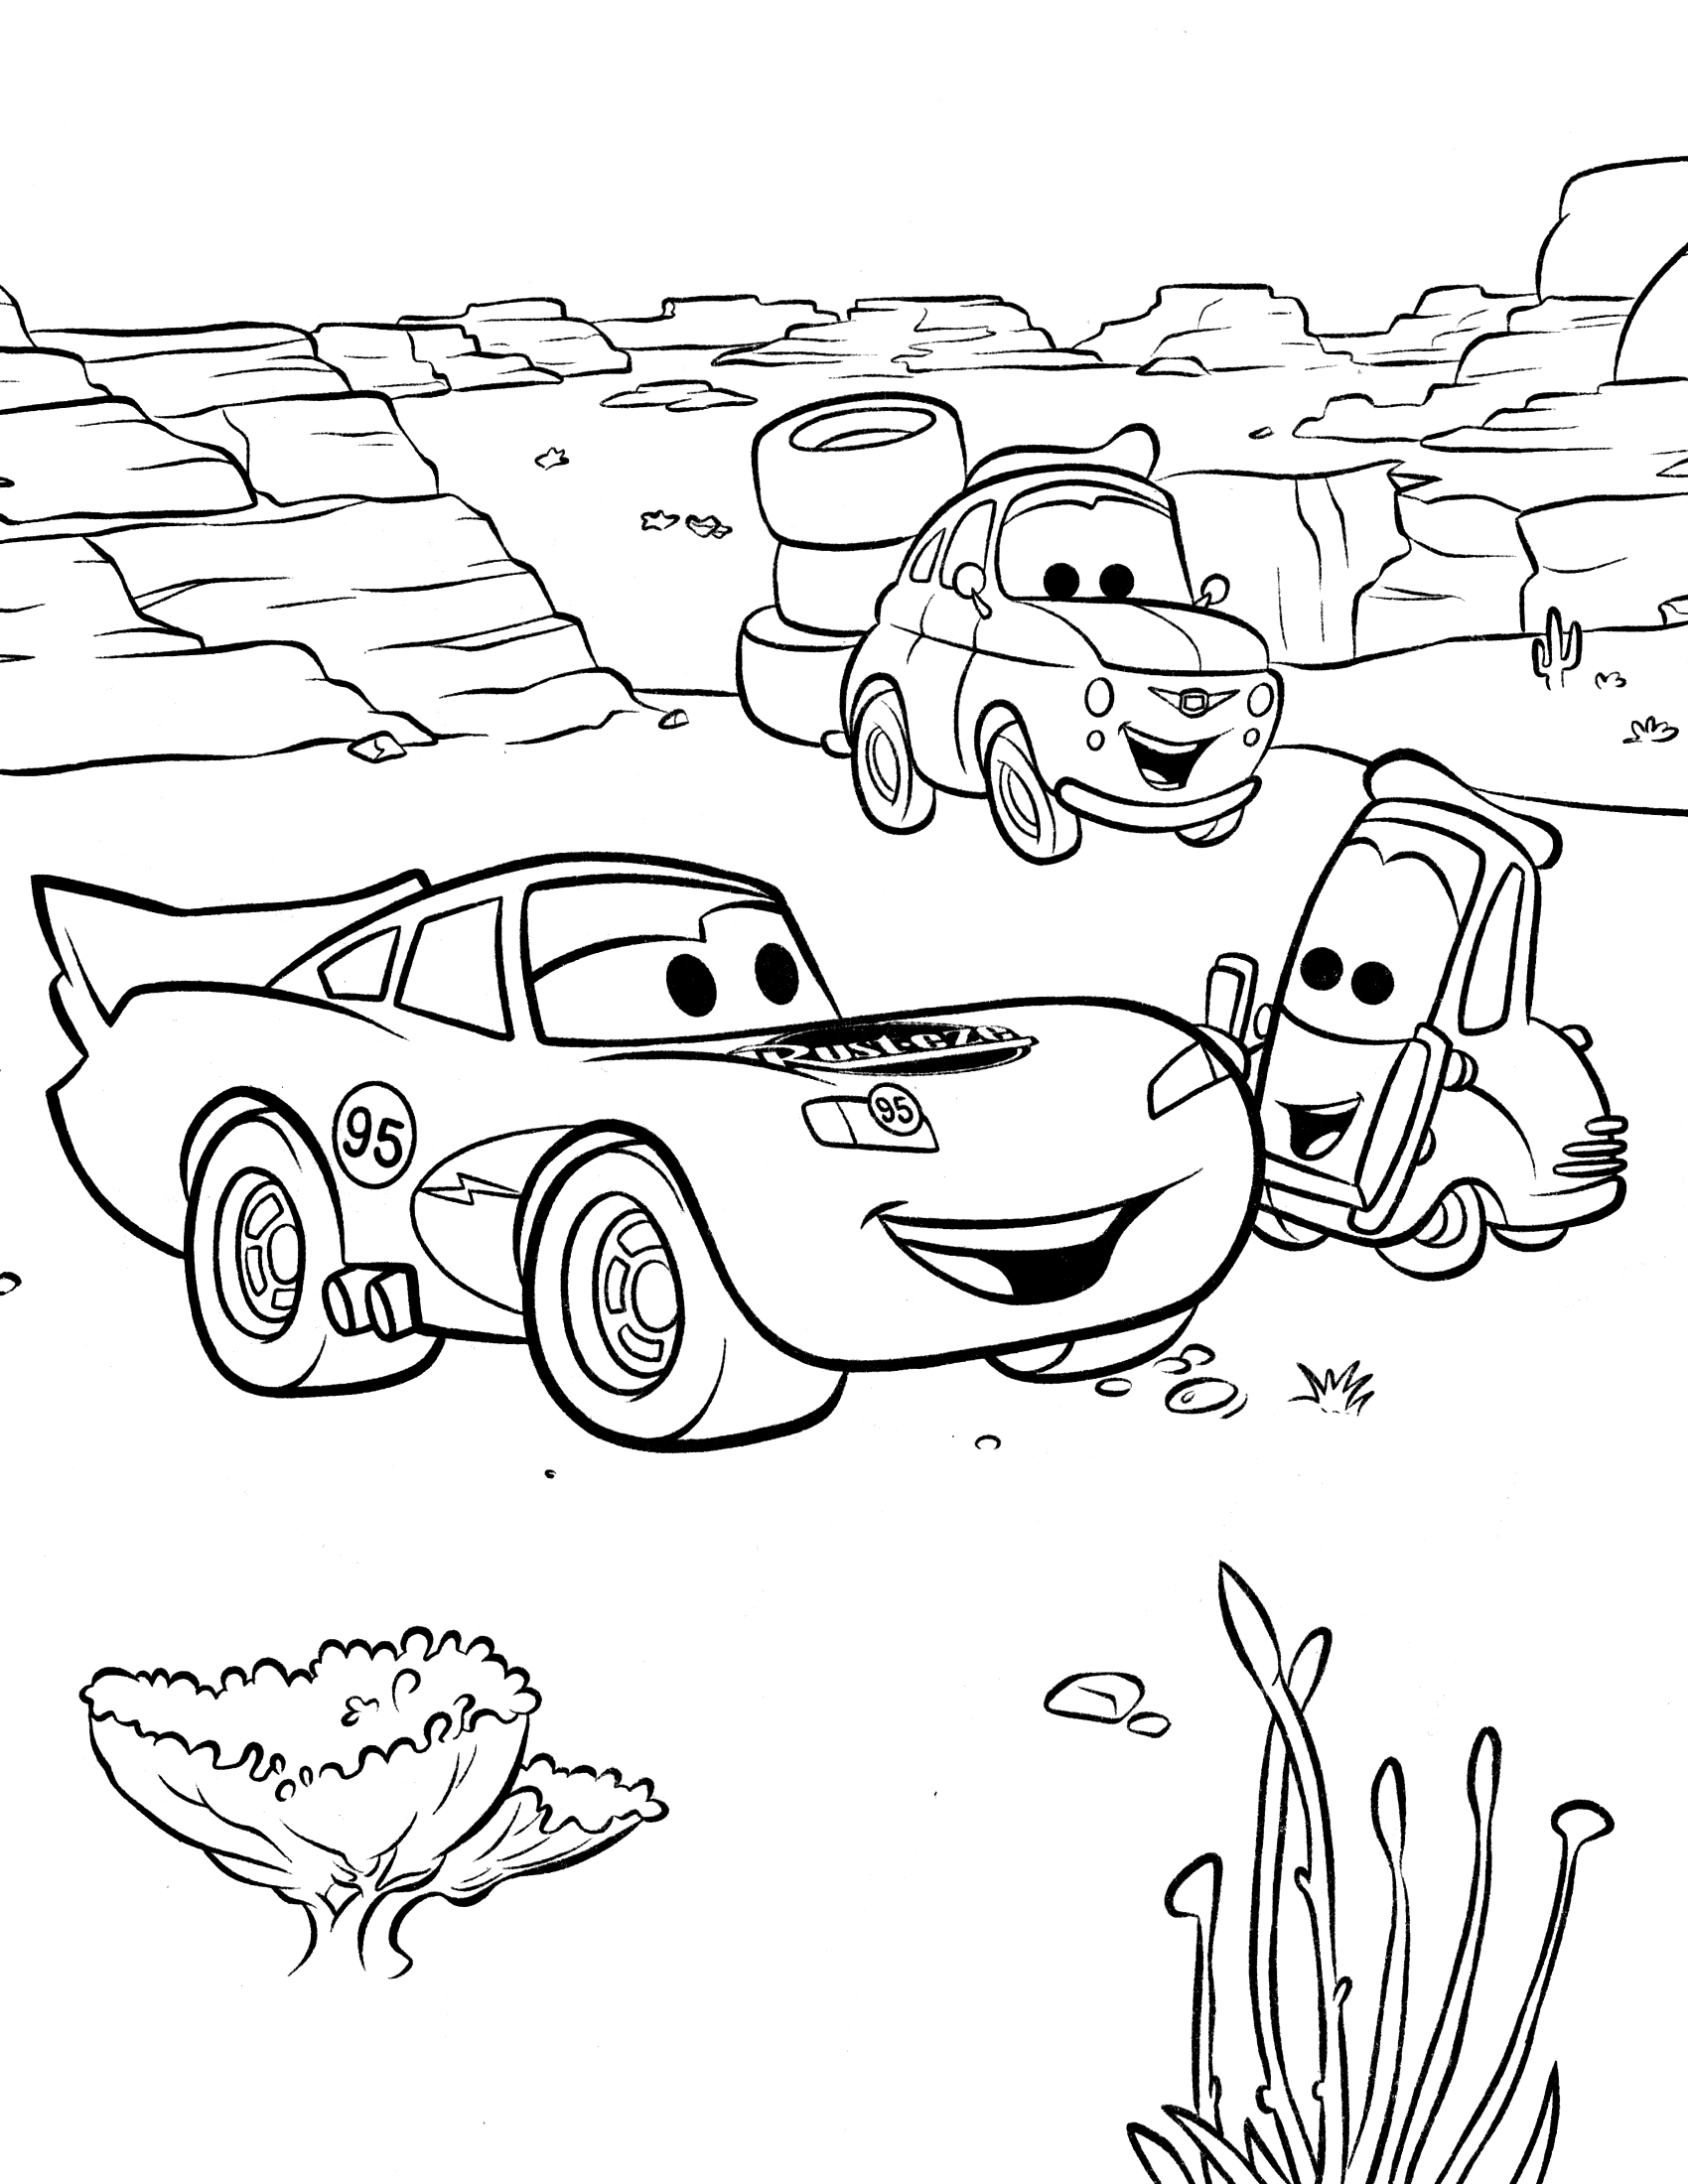 Раскраскидля мальчиков по мультфильму тачки  Тачки в каньоне